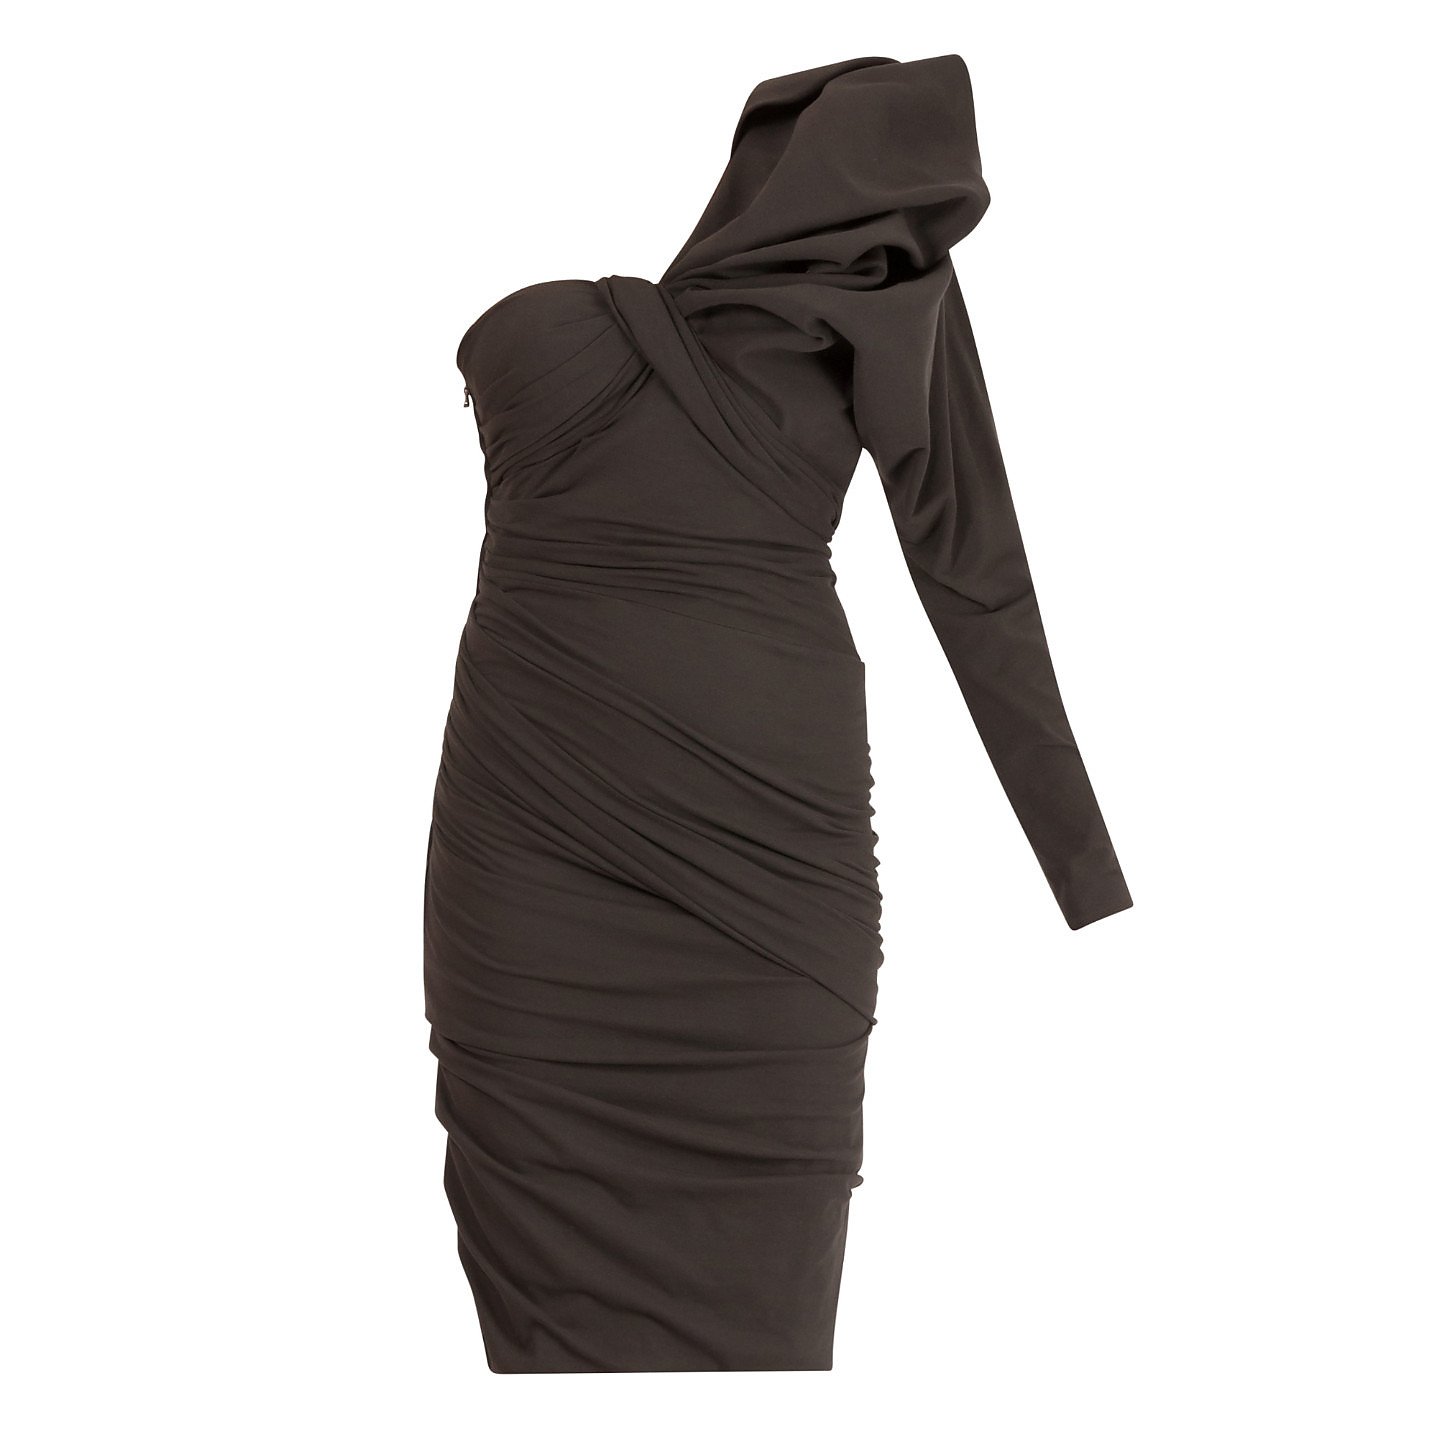 Lanvin Structured One-Shoulder Dress